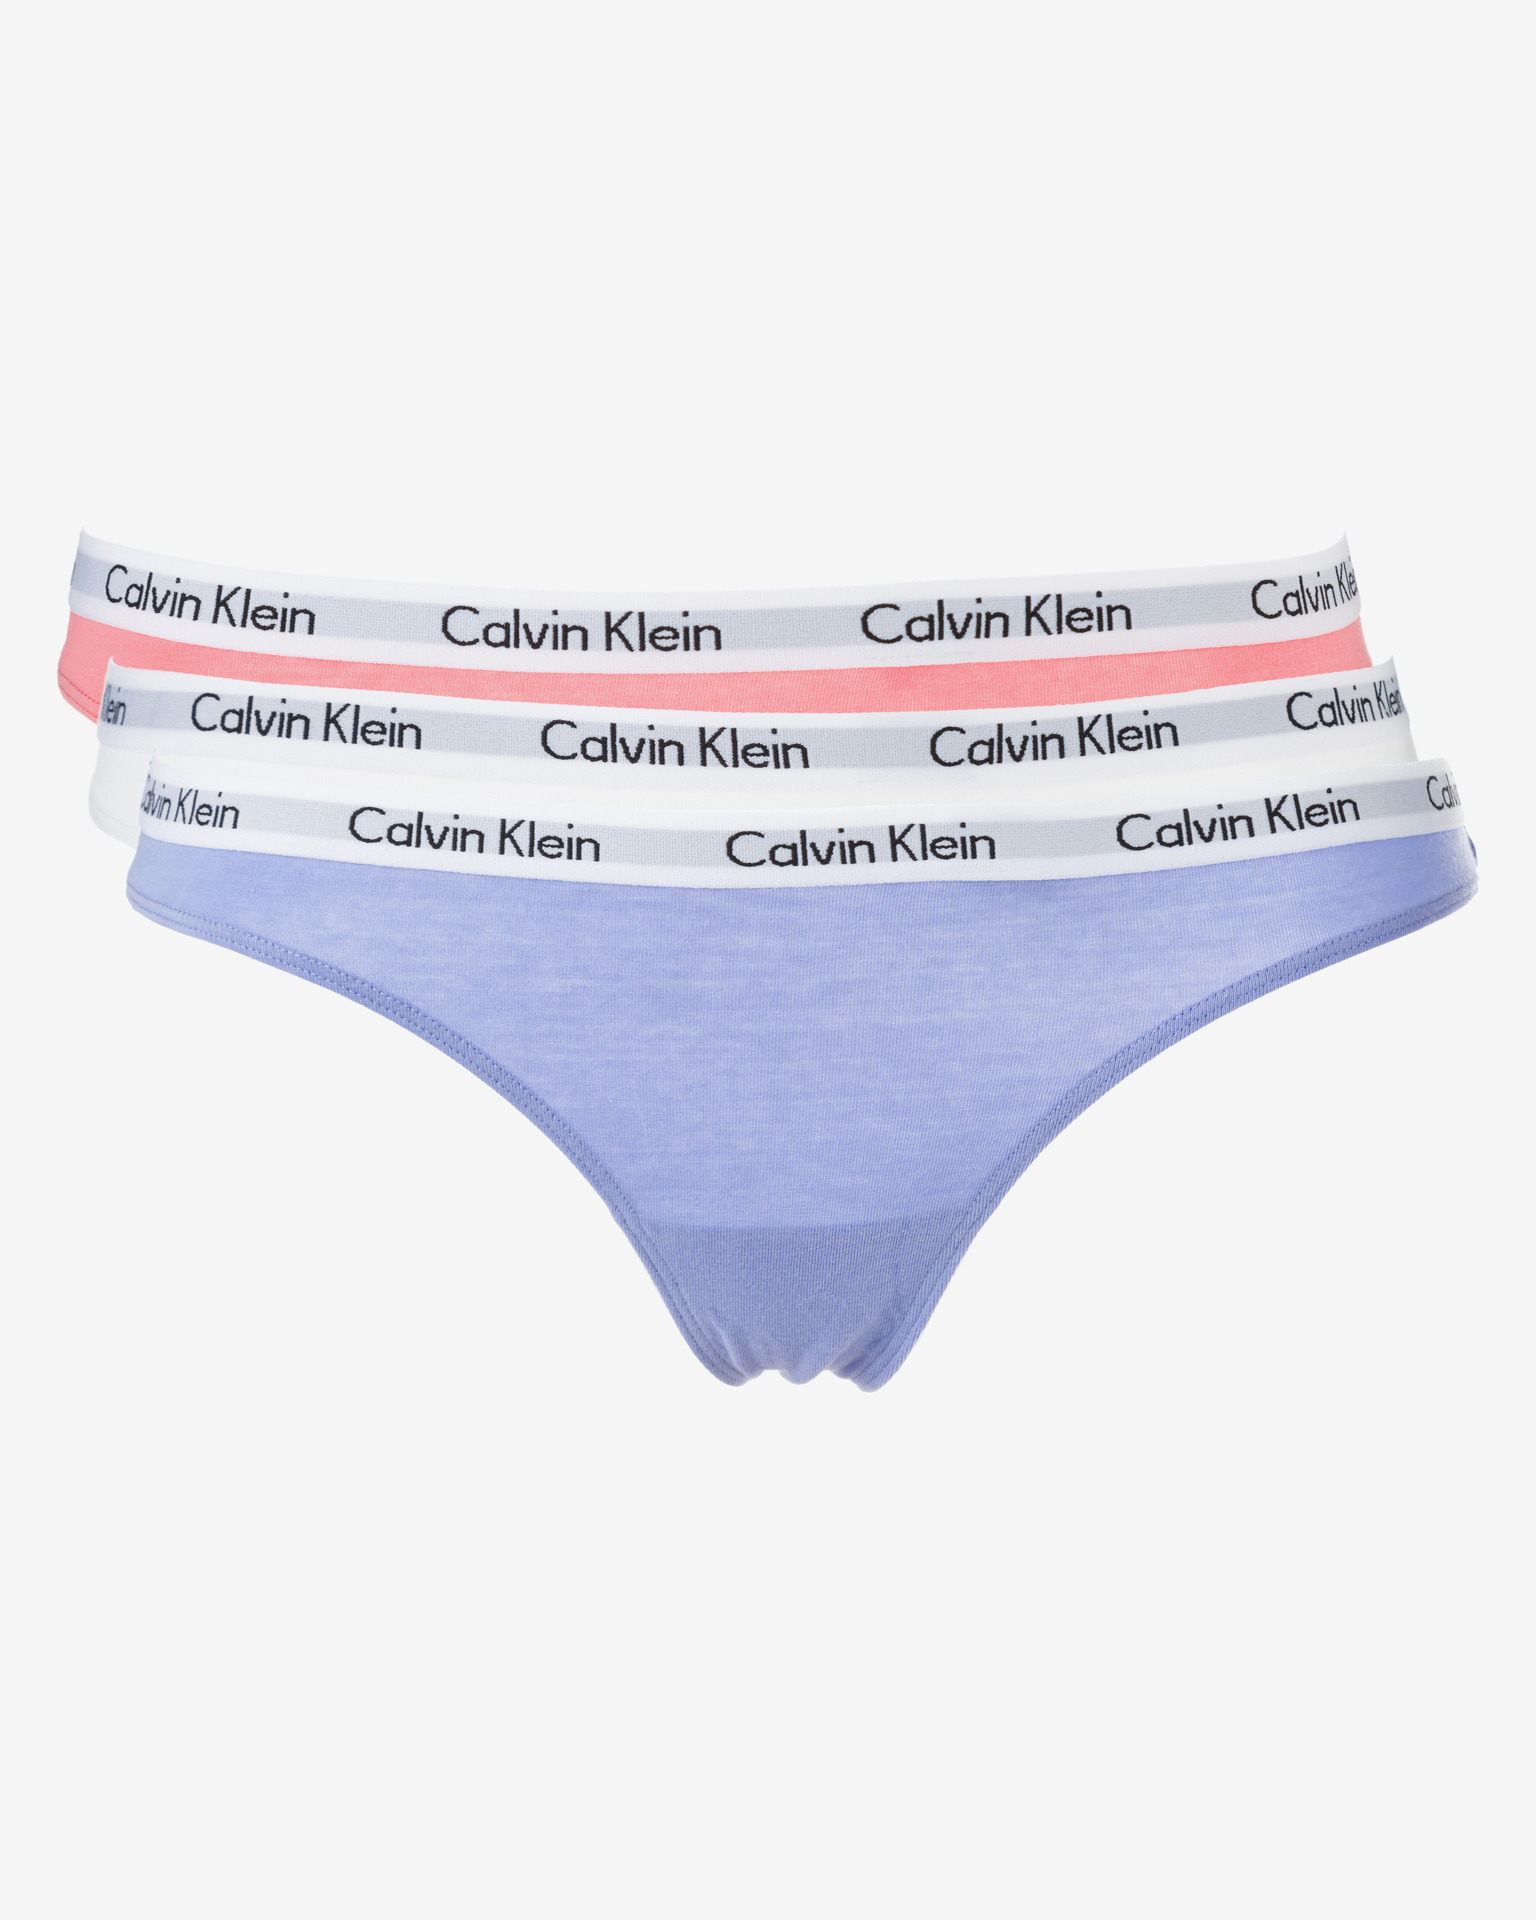 Toto trojbalení obsahuje dámské kalhotky Calvin Klein v jednoduchém střihu a v pastelových barvách